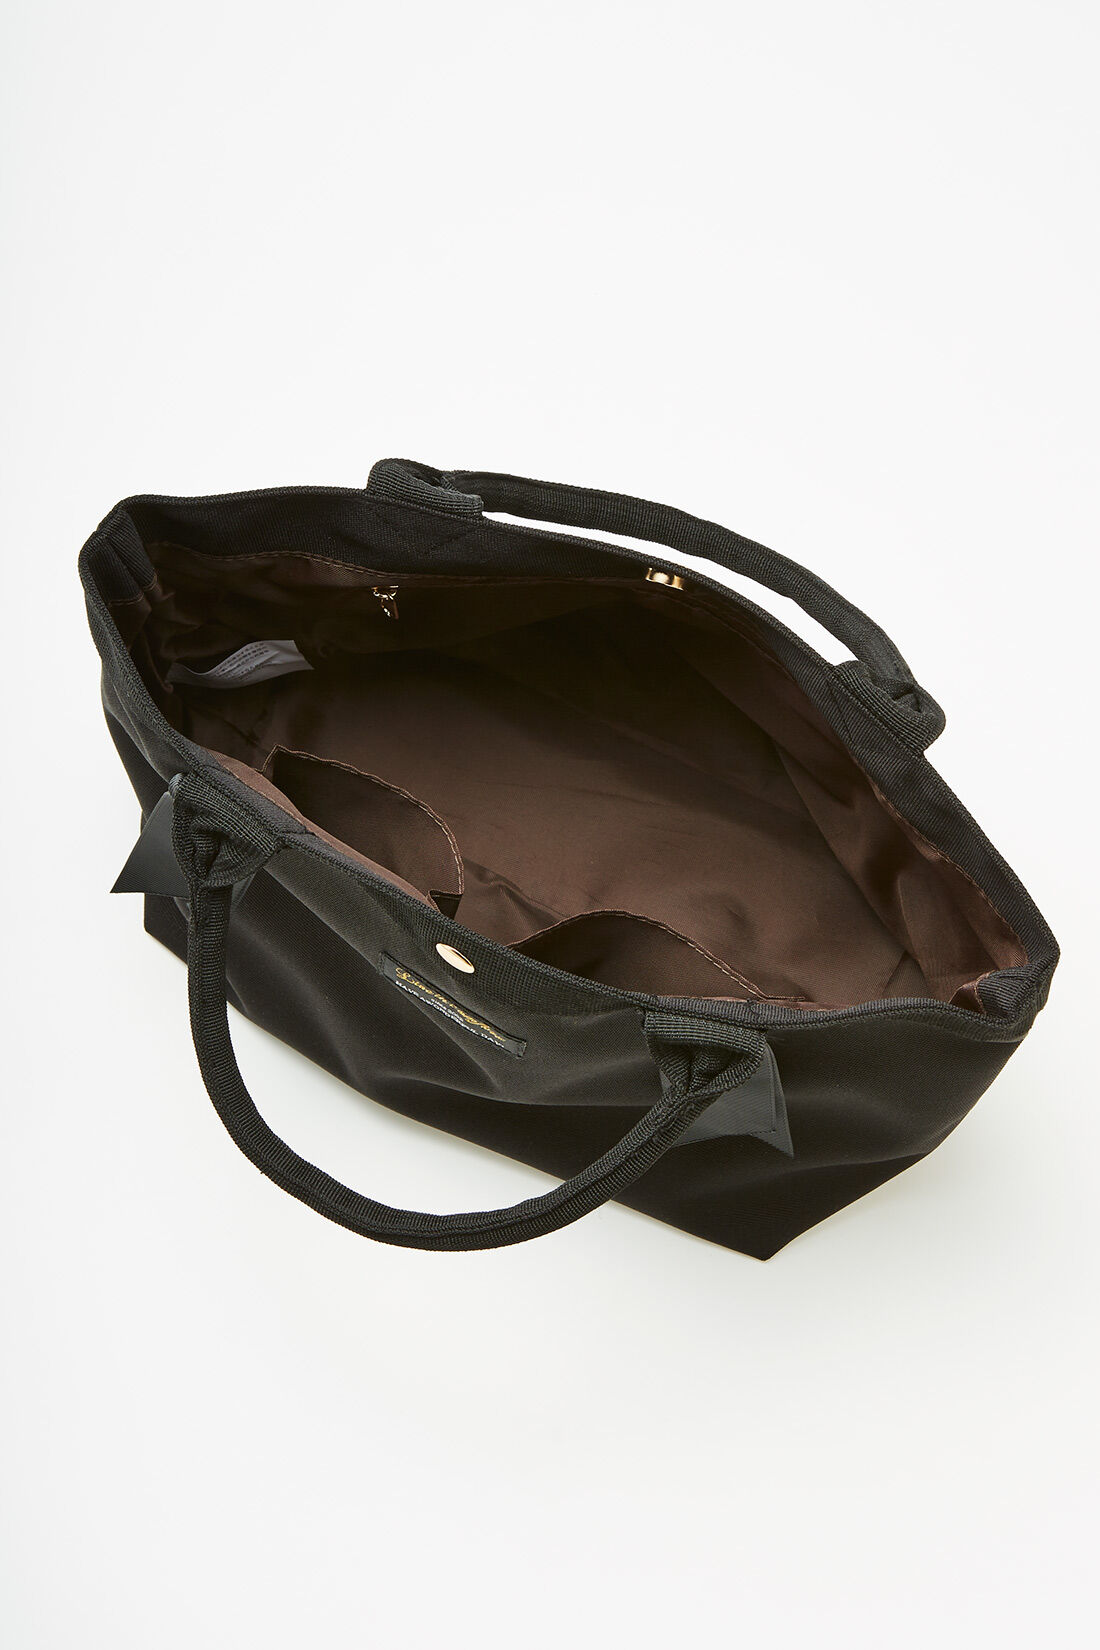 Live in  comfort|リブ イン コンフォート リボン付きできゅんとかわいい便利トートバッグ〈ブラック〉|内側ファスナーポケットがひとつ、仕切りポケットがふたつ。底まちを付けて、身のまわりのものがきちんと収まる容量に。